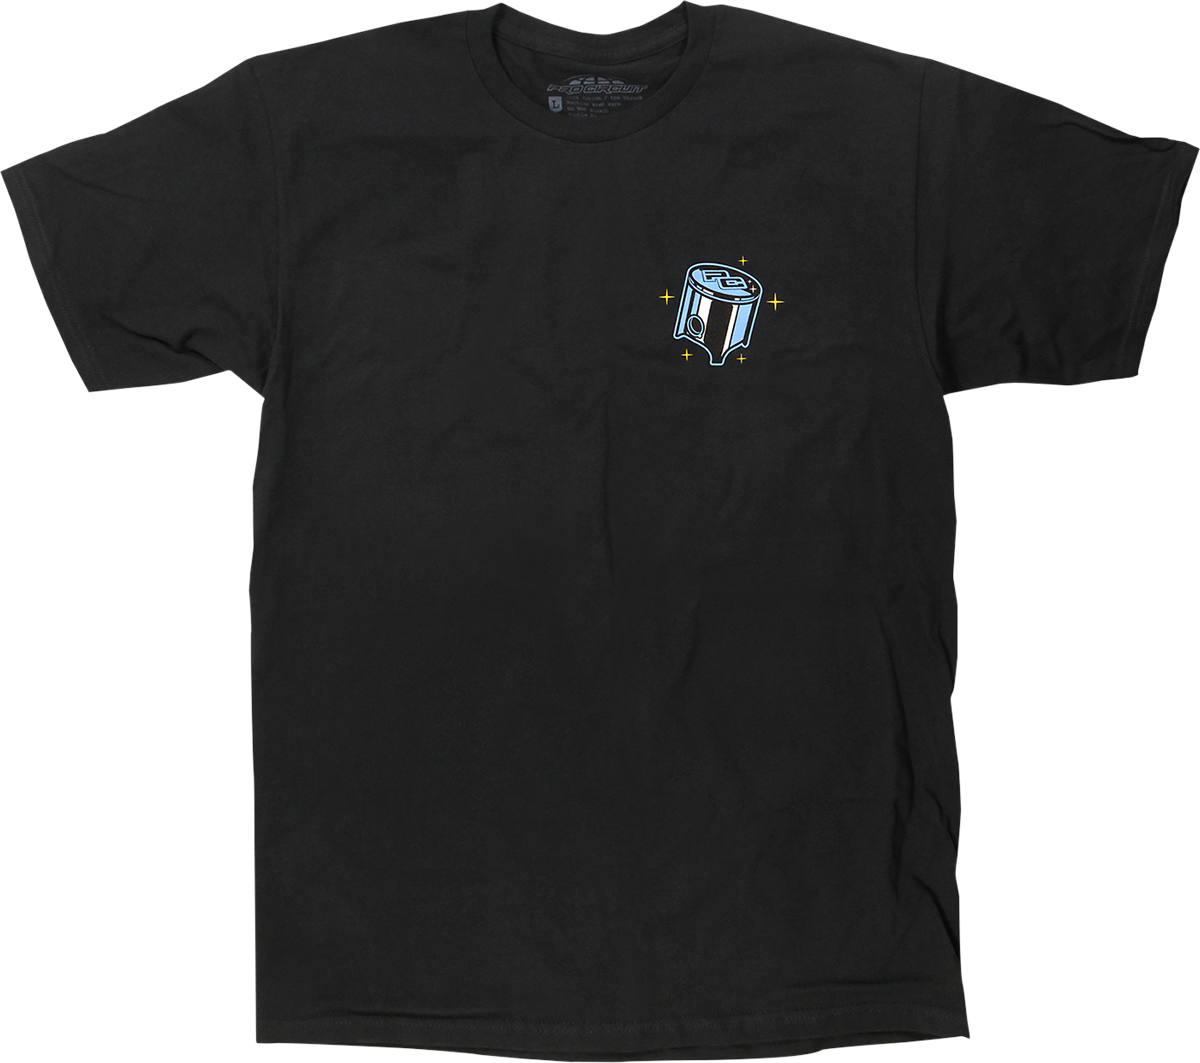 PRO CIRCUIT Piston T-Shirt - Black - Large 6431740-030